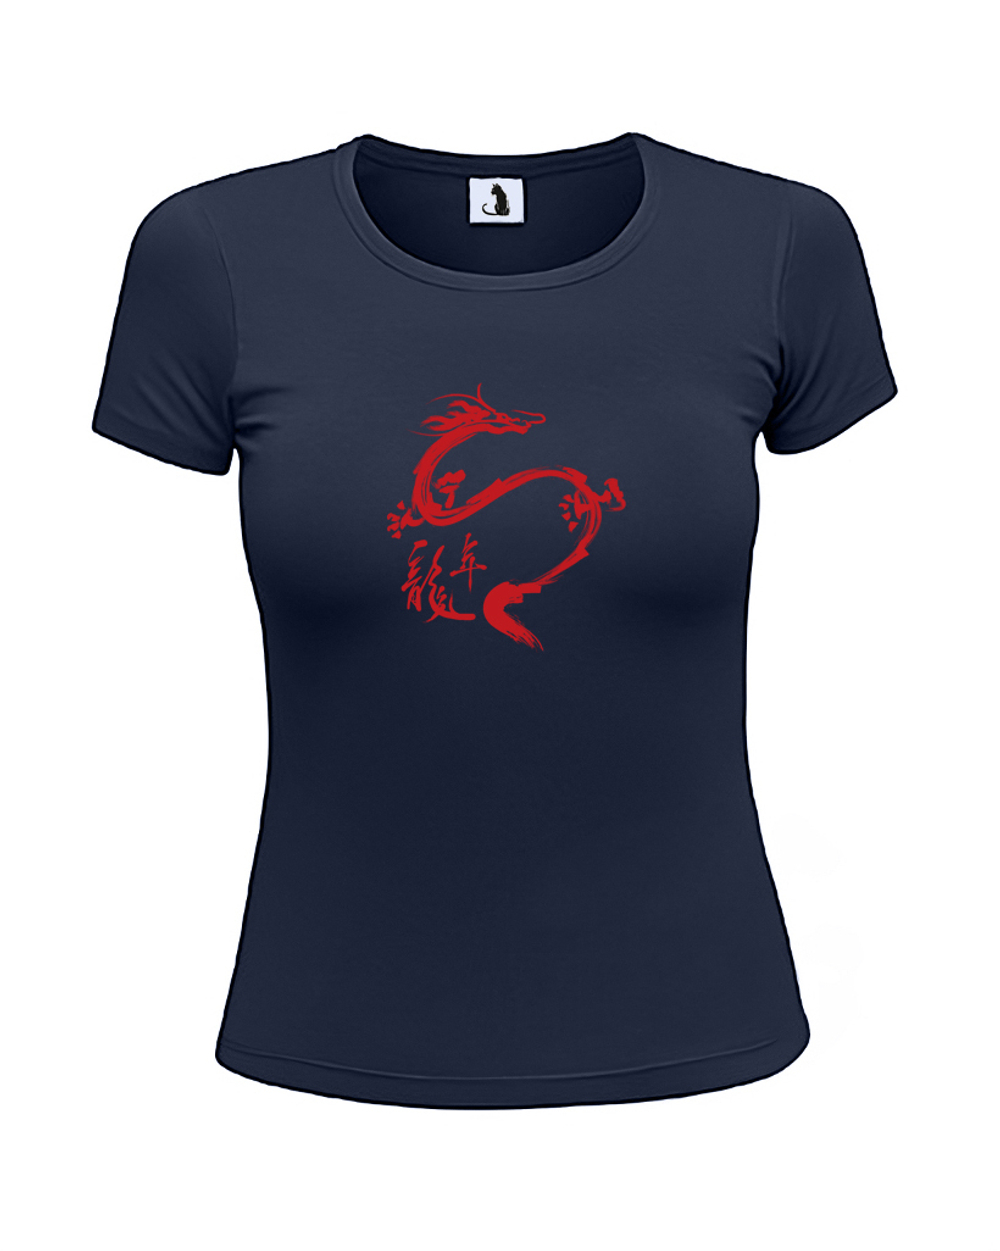 Футболка Дракон женская приталенная темно-синяя с красным рисунком